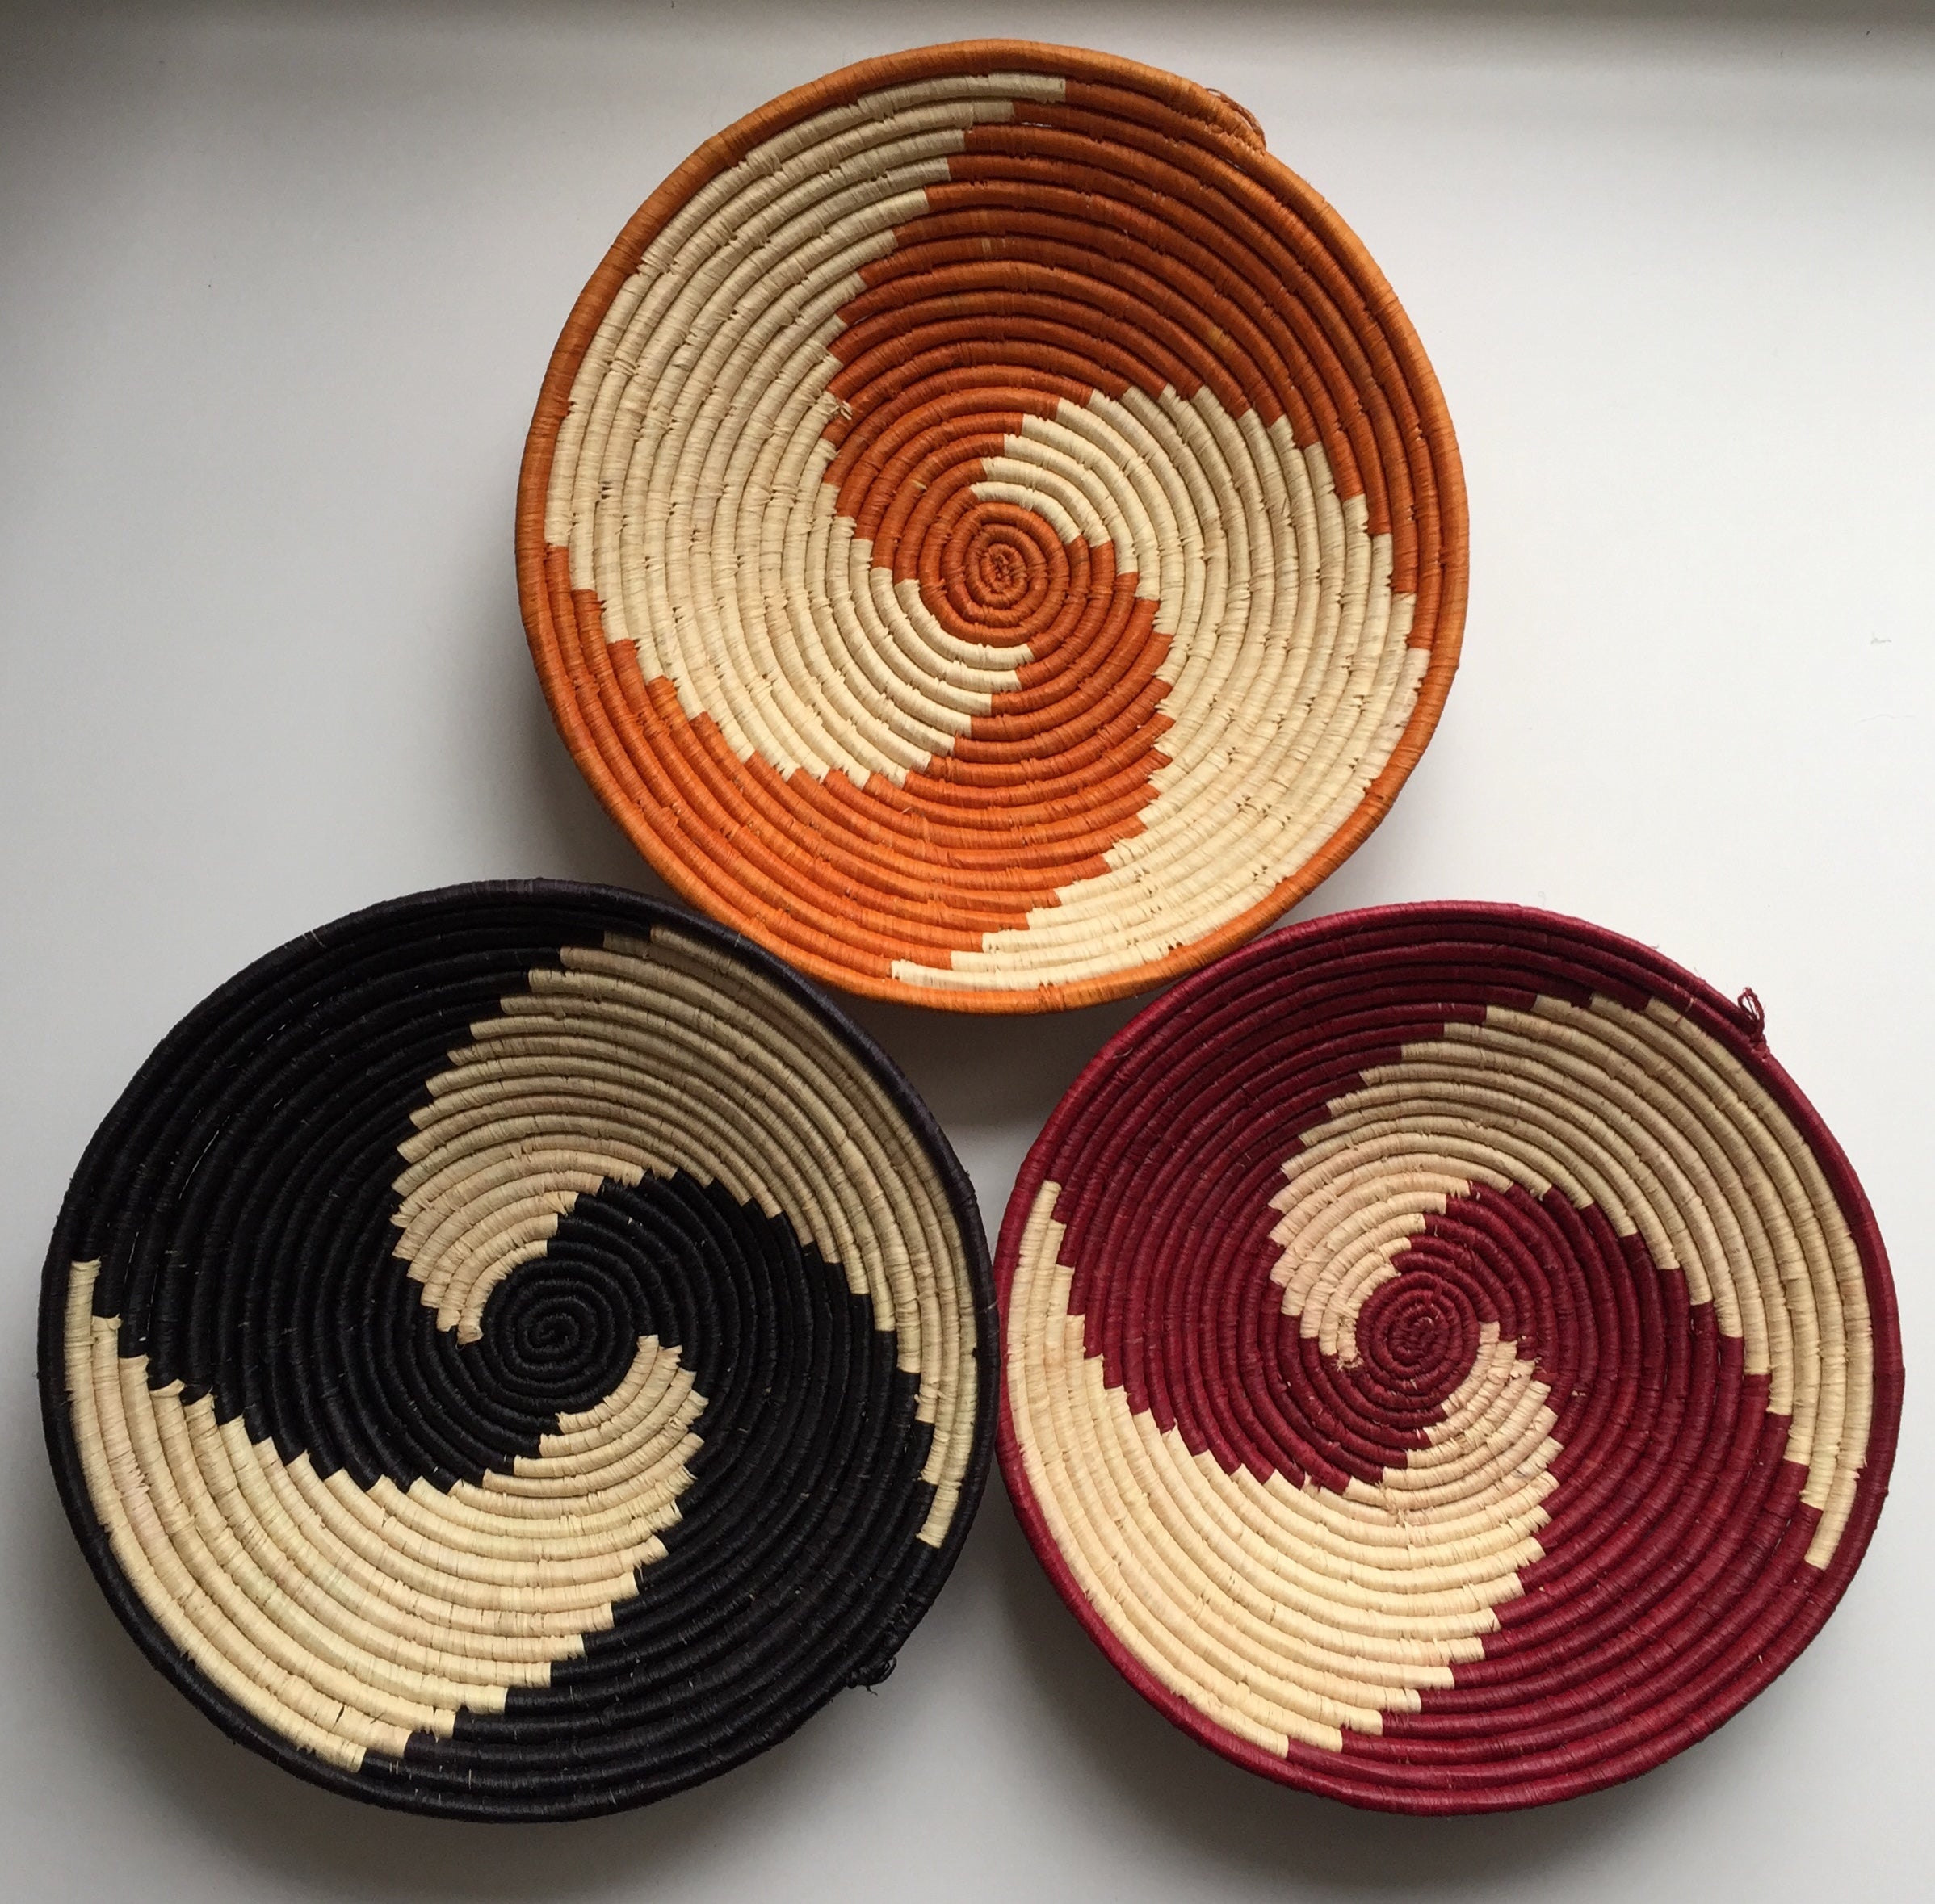 Pinwheel design woven bowl